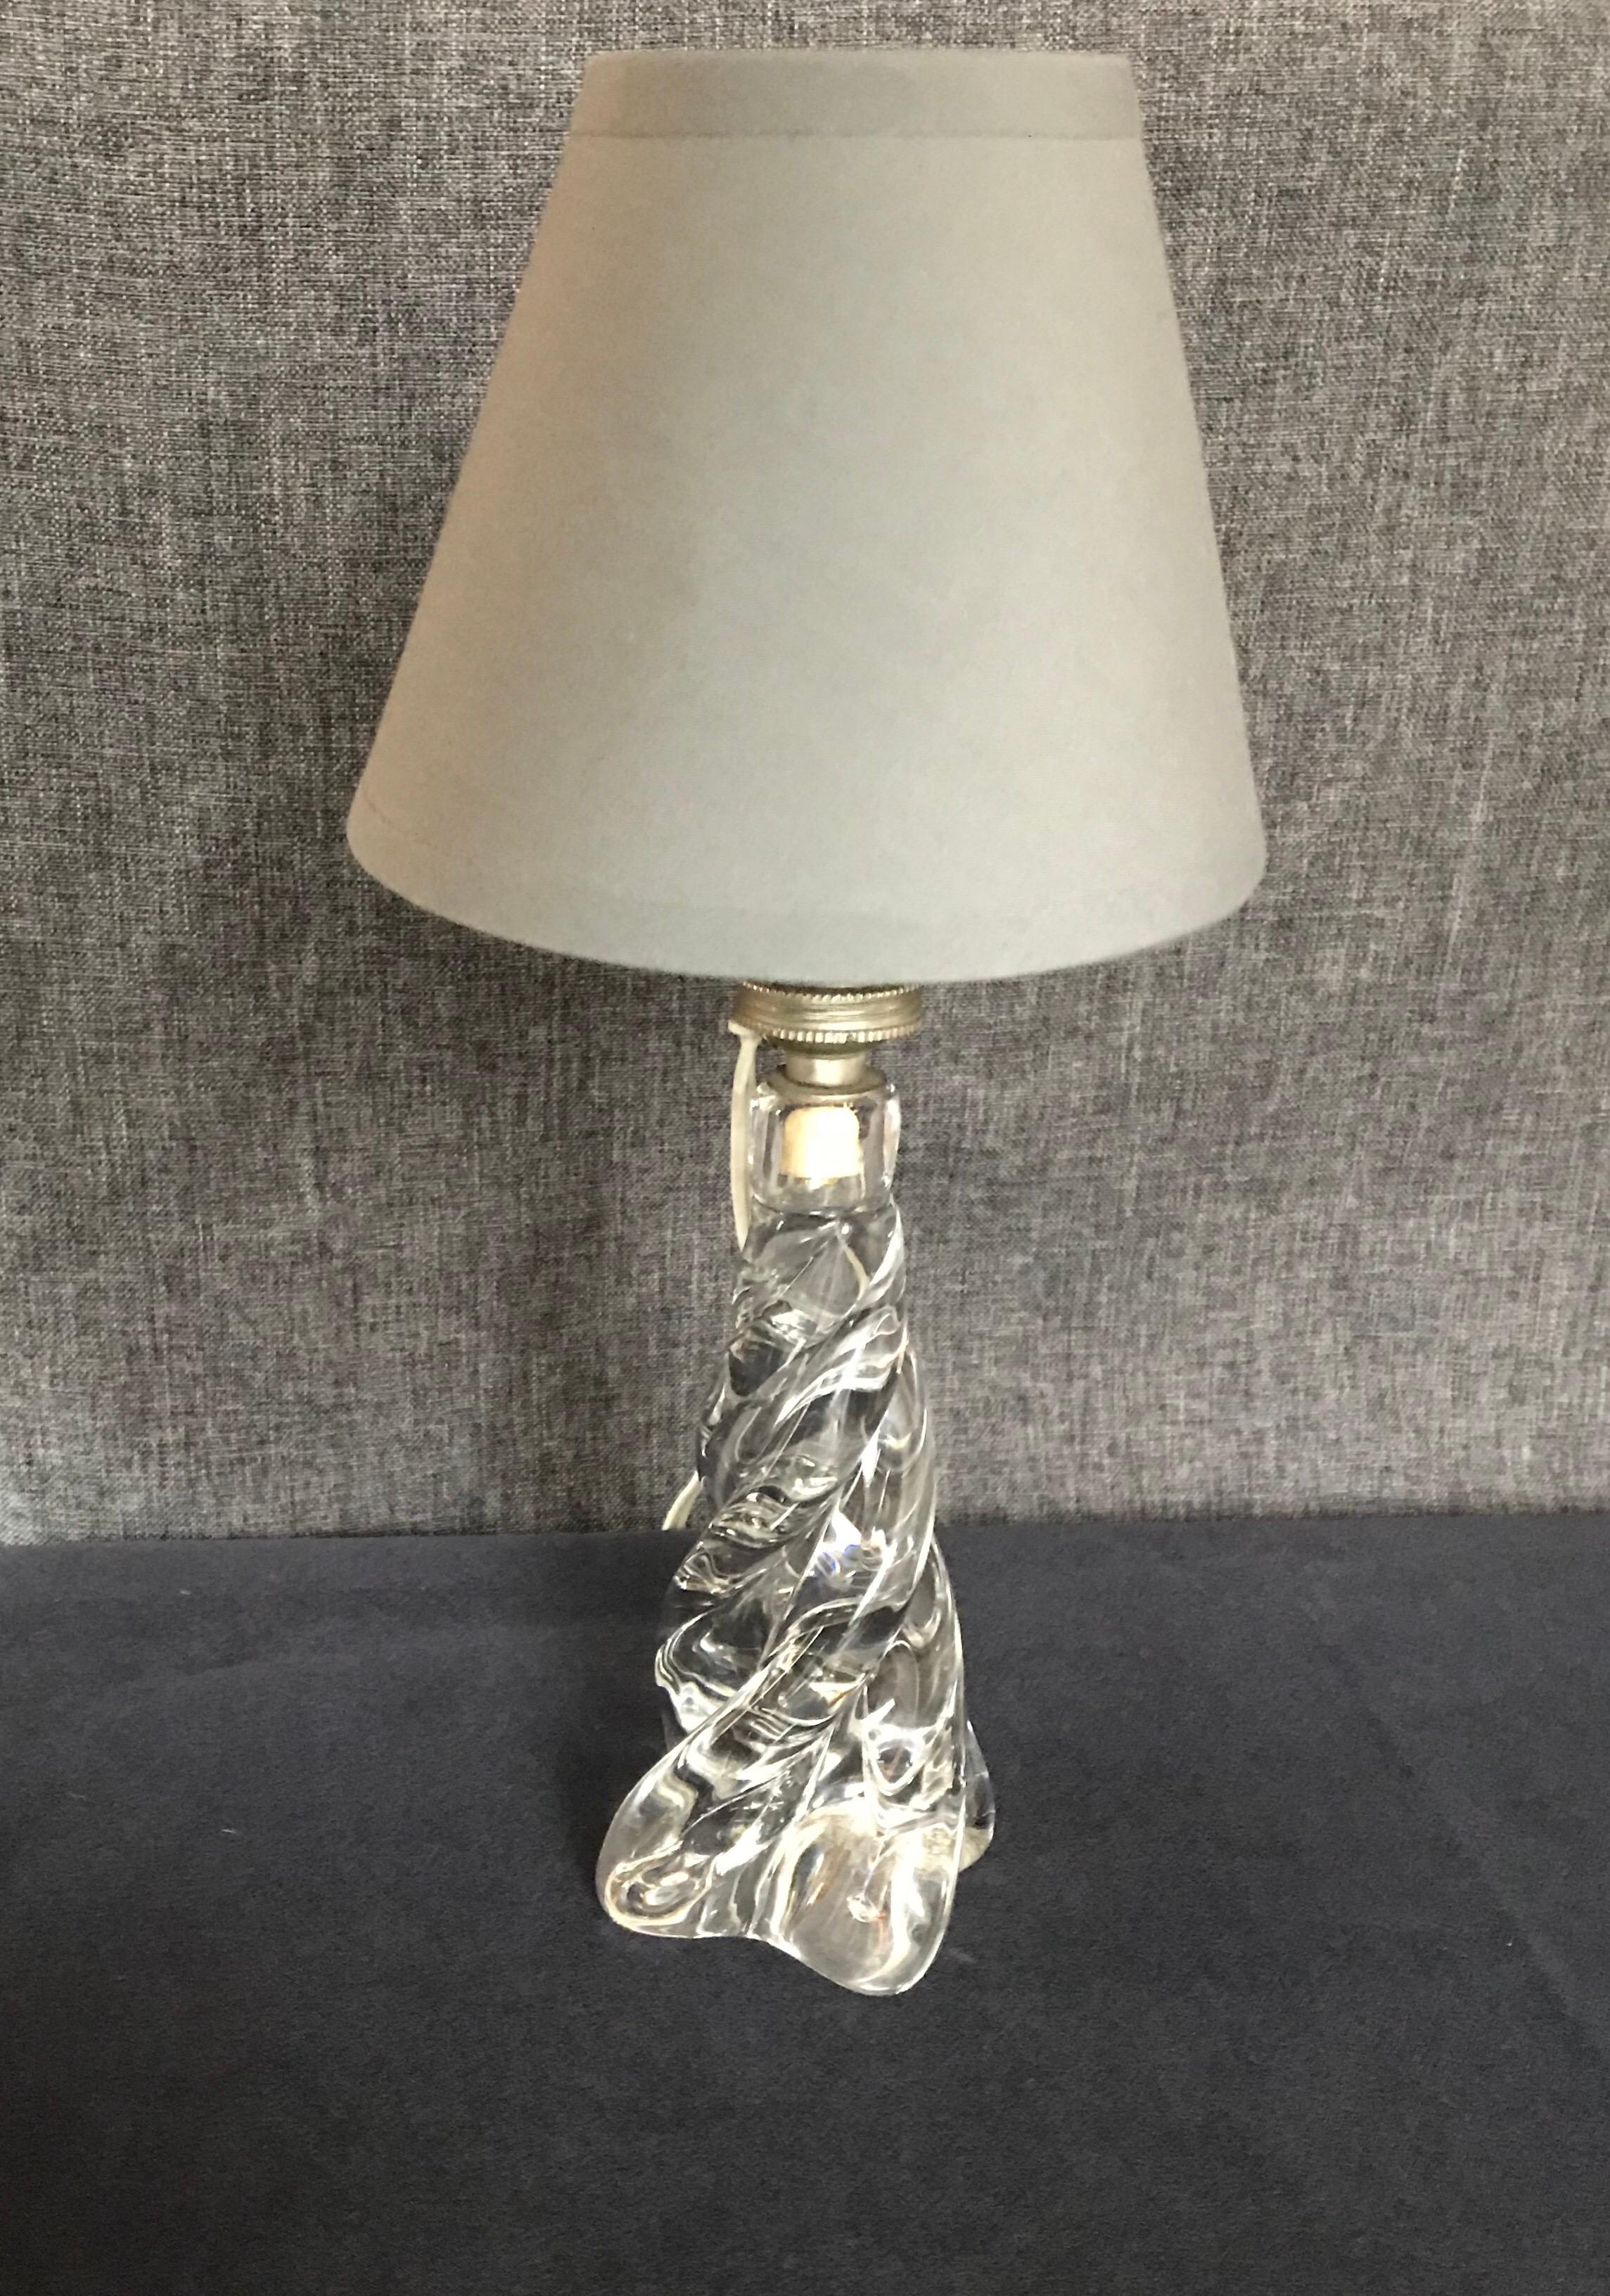 Belle lampe de table en cristal avec son abat-jour en coton gris.
Mesures : D 14 x H 30,5 cm
Sans l'abat-jour D 8 x H 20 cm
Abat-jour D 14 x H 10,5 cm.
 